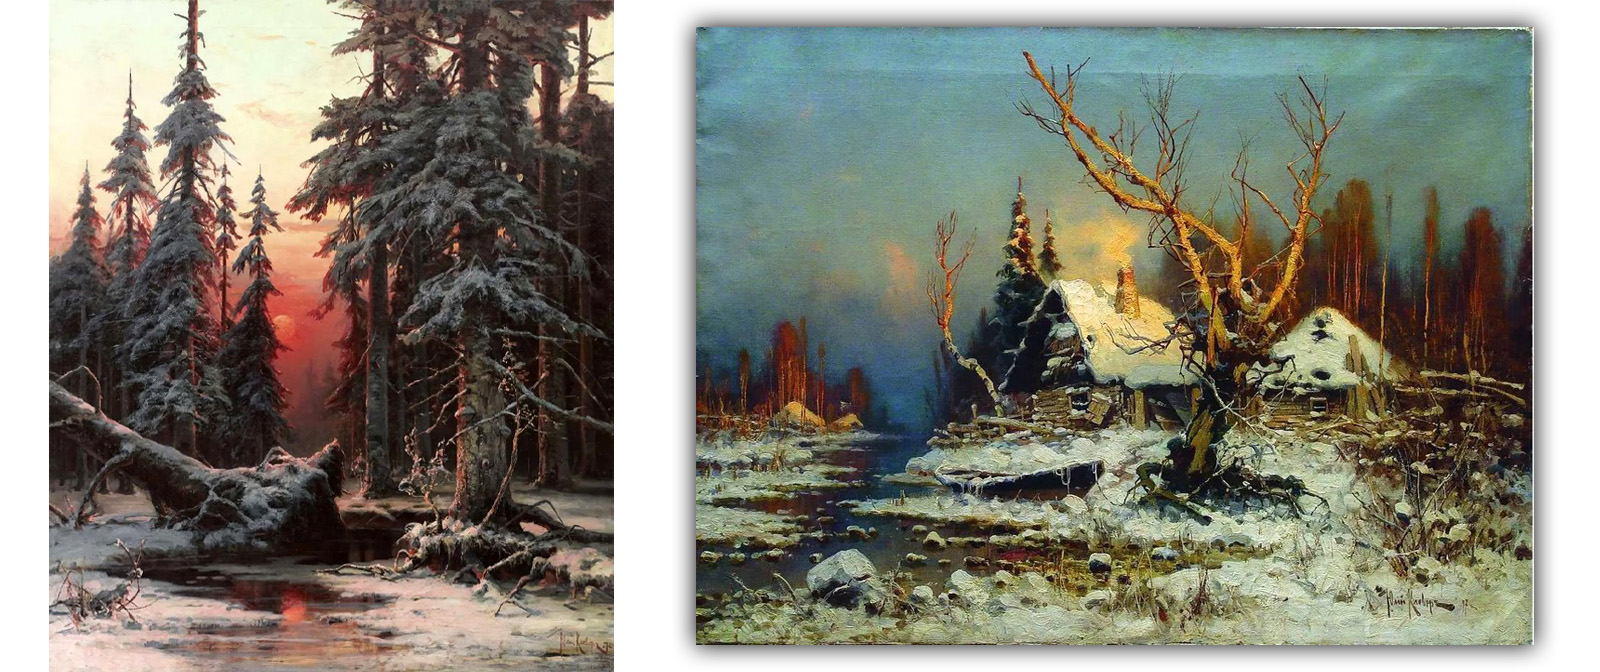 Изумительные пейзажи незаслуженно забытого художника Юлия Клевера, которые восхищали многих любителей искусства.